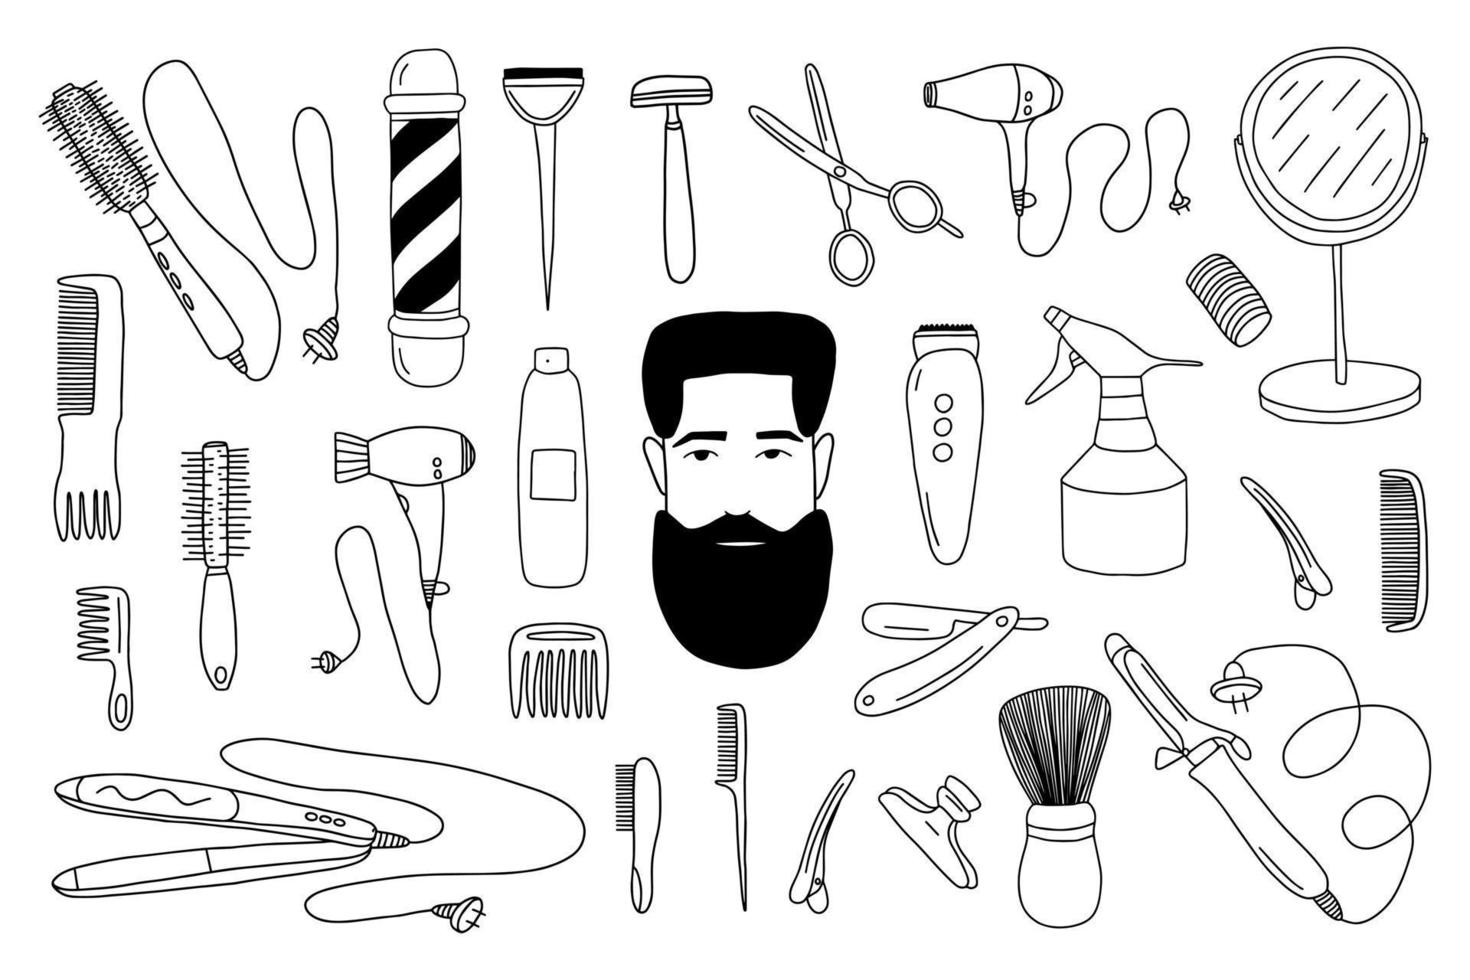 doodle vector barbearia conjunto de elementos isolado. adesivos de barbearia e cabeleireiro desenhados à mão em fundo branco.